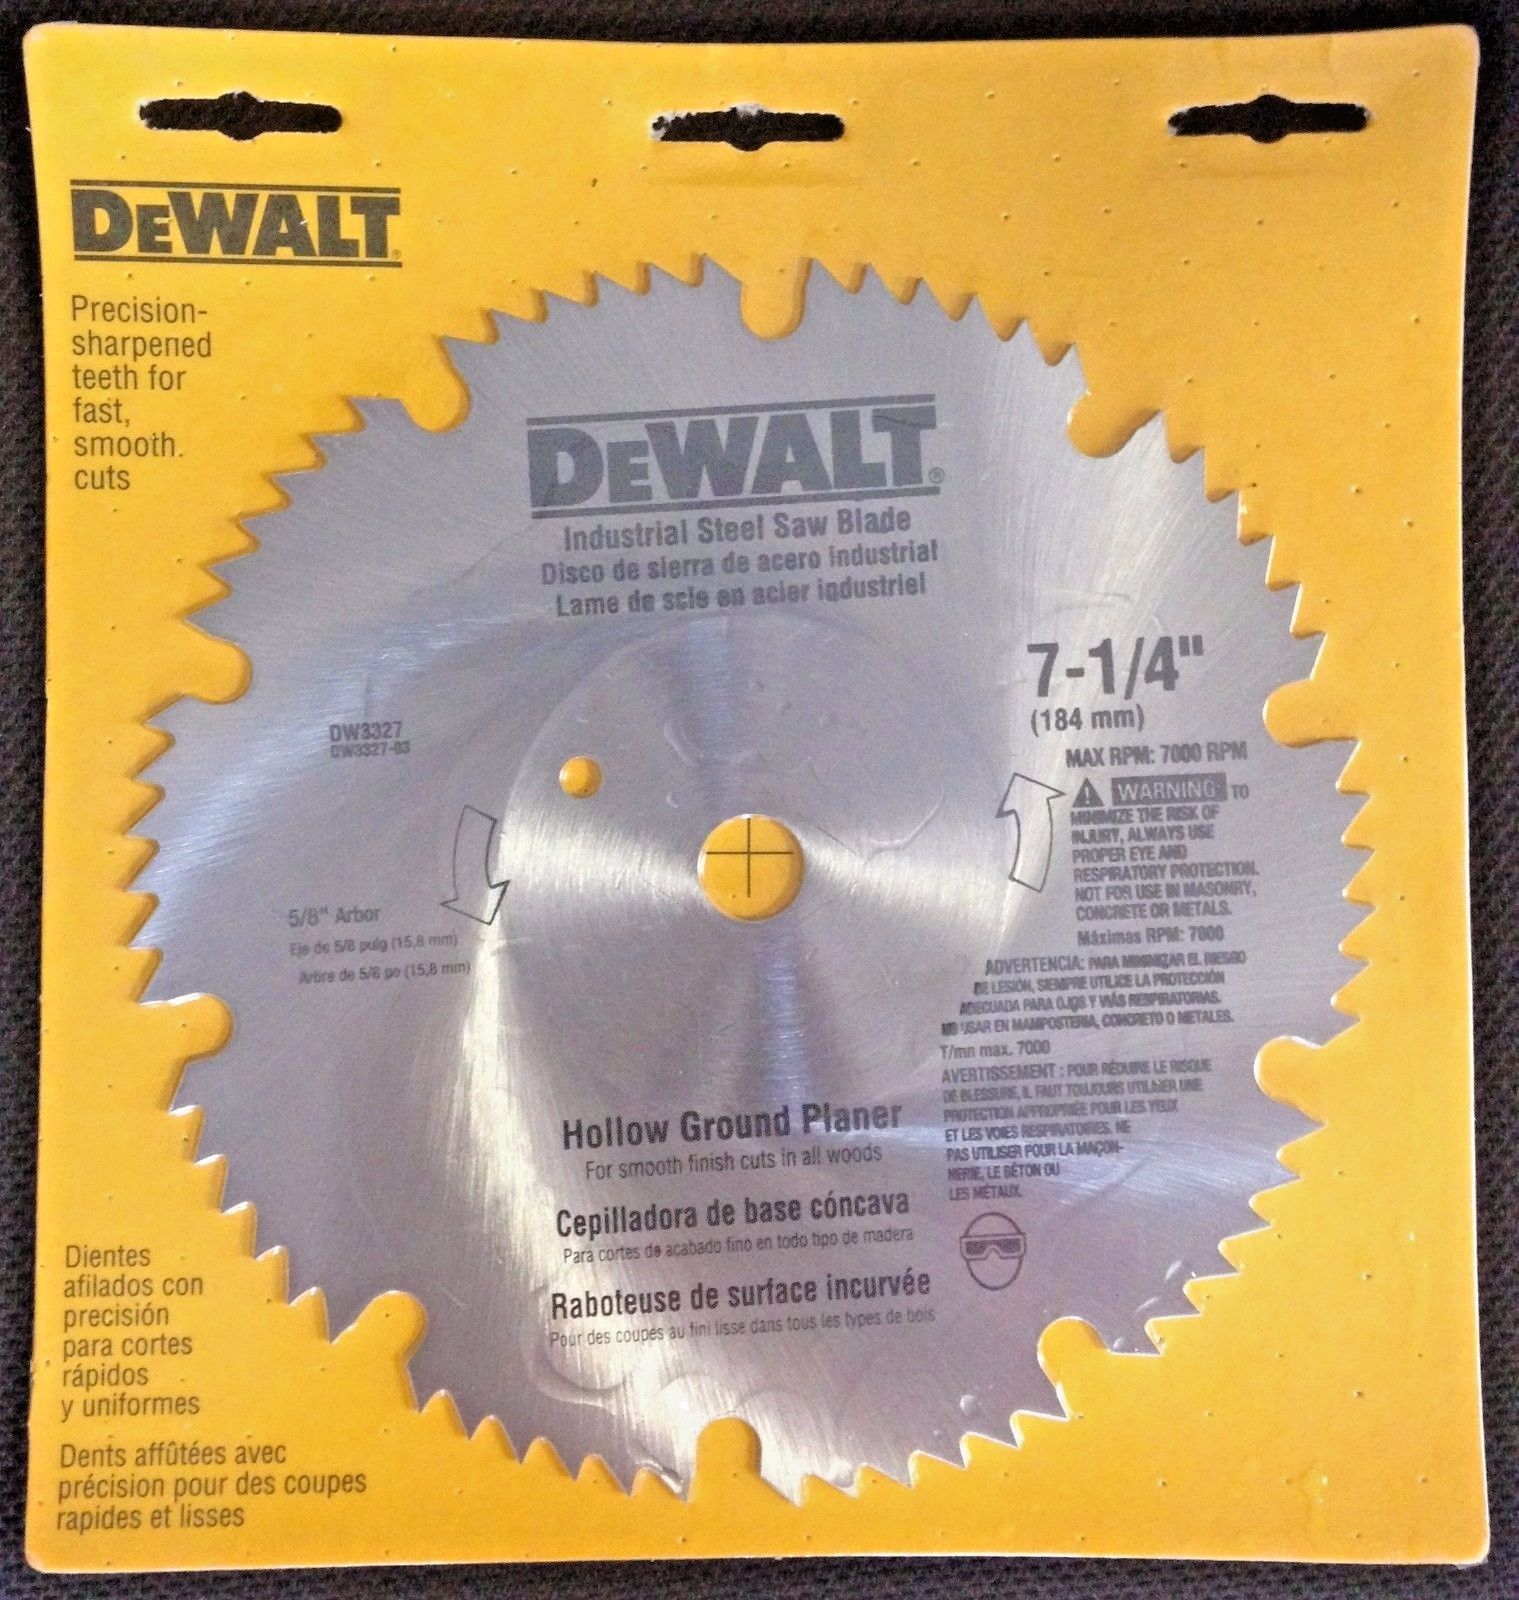 Dewalt DW3327 7-1/4" x 60 Tooth Hollow Ground Planer Steel Saw Blade 5/8" Arbor